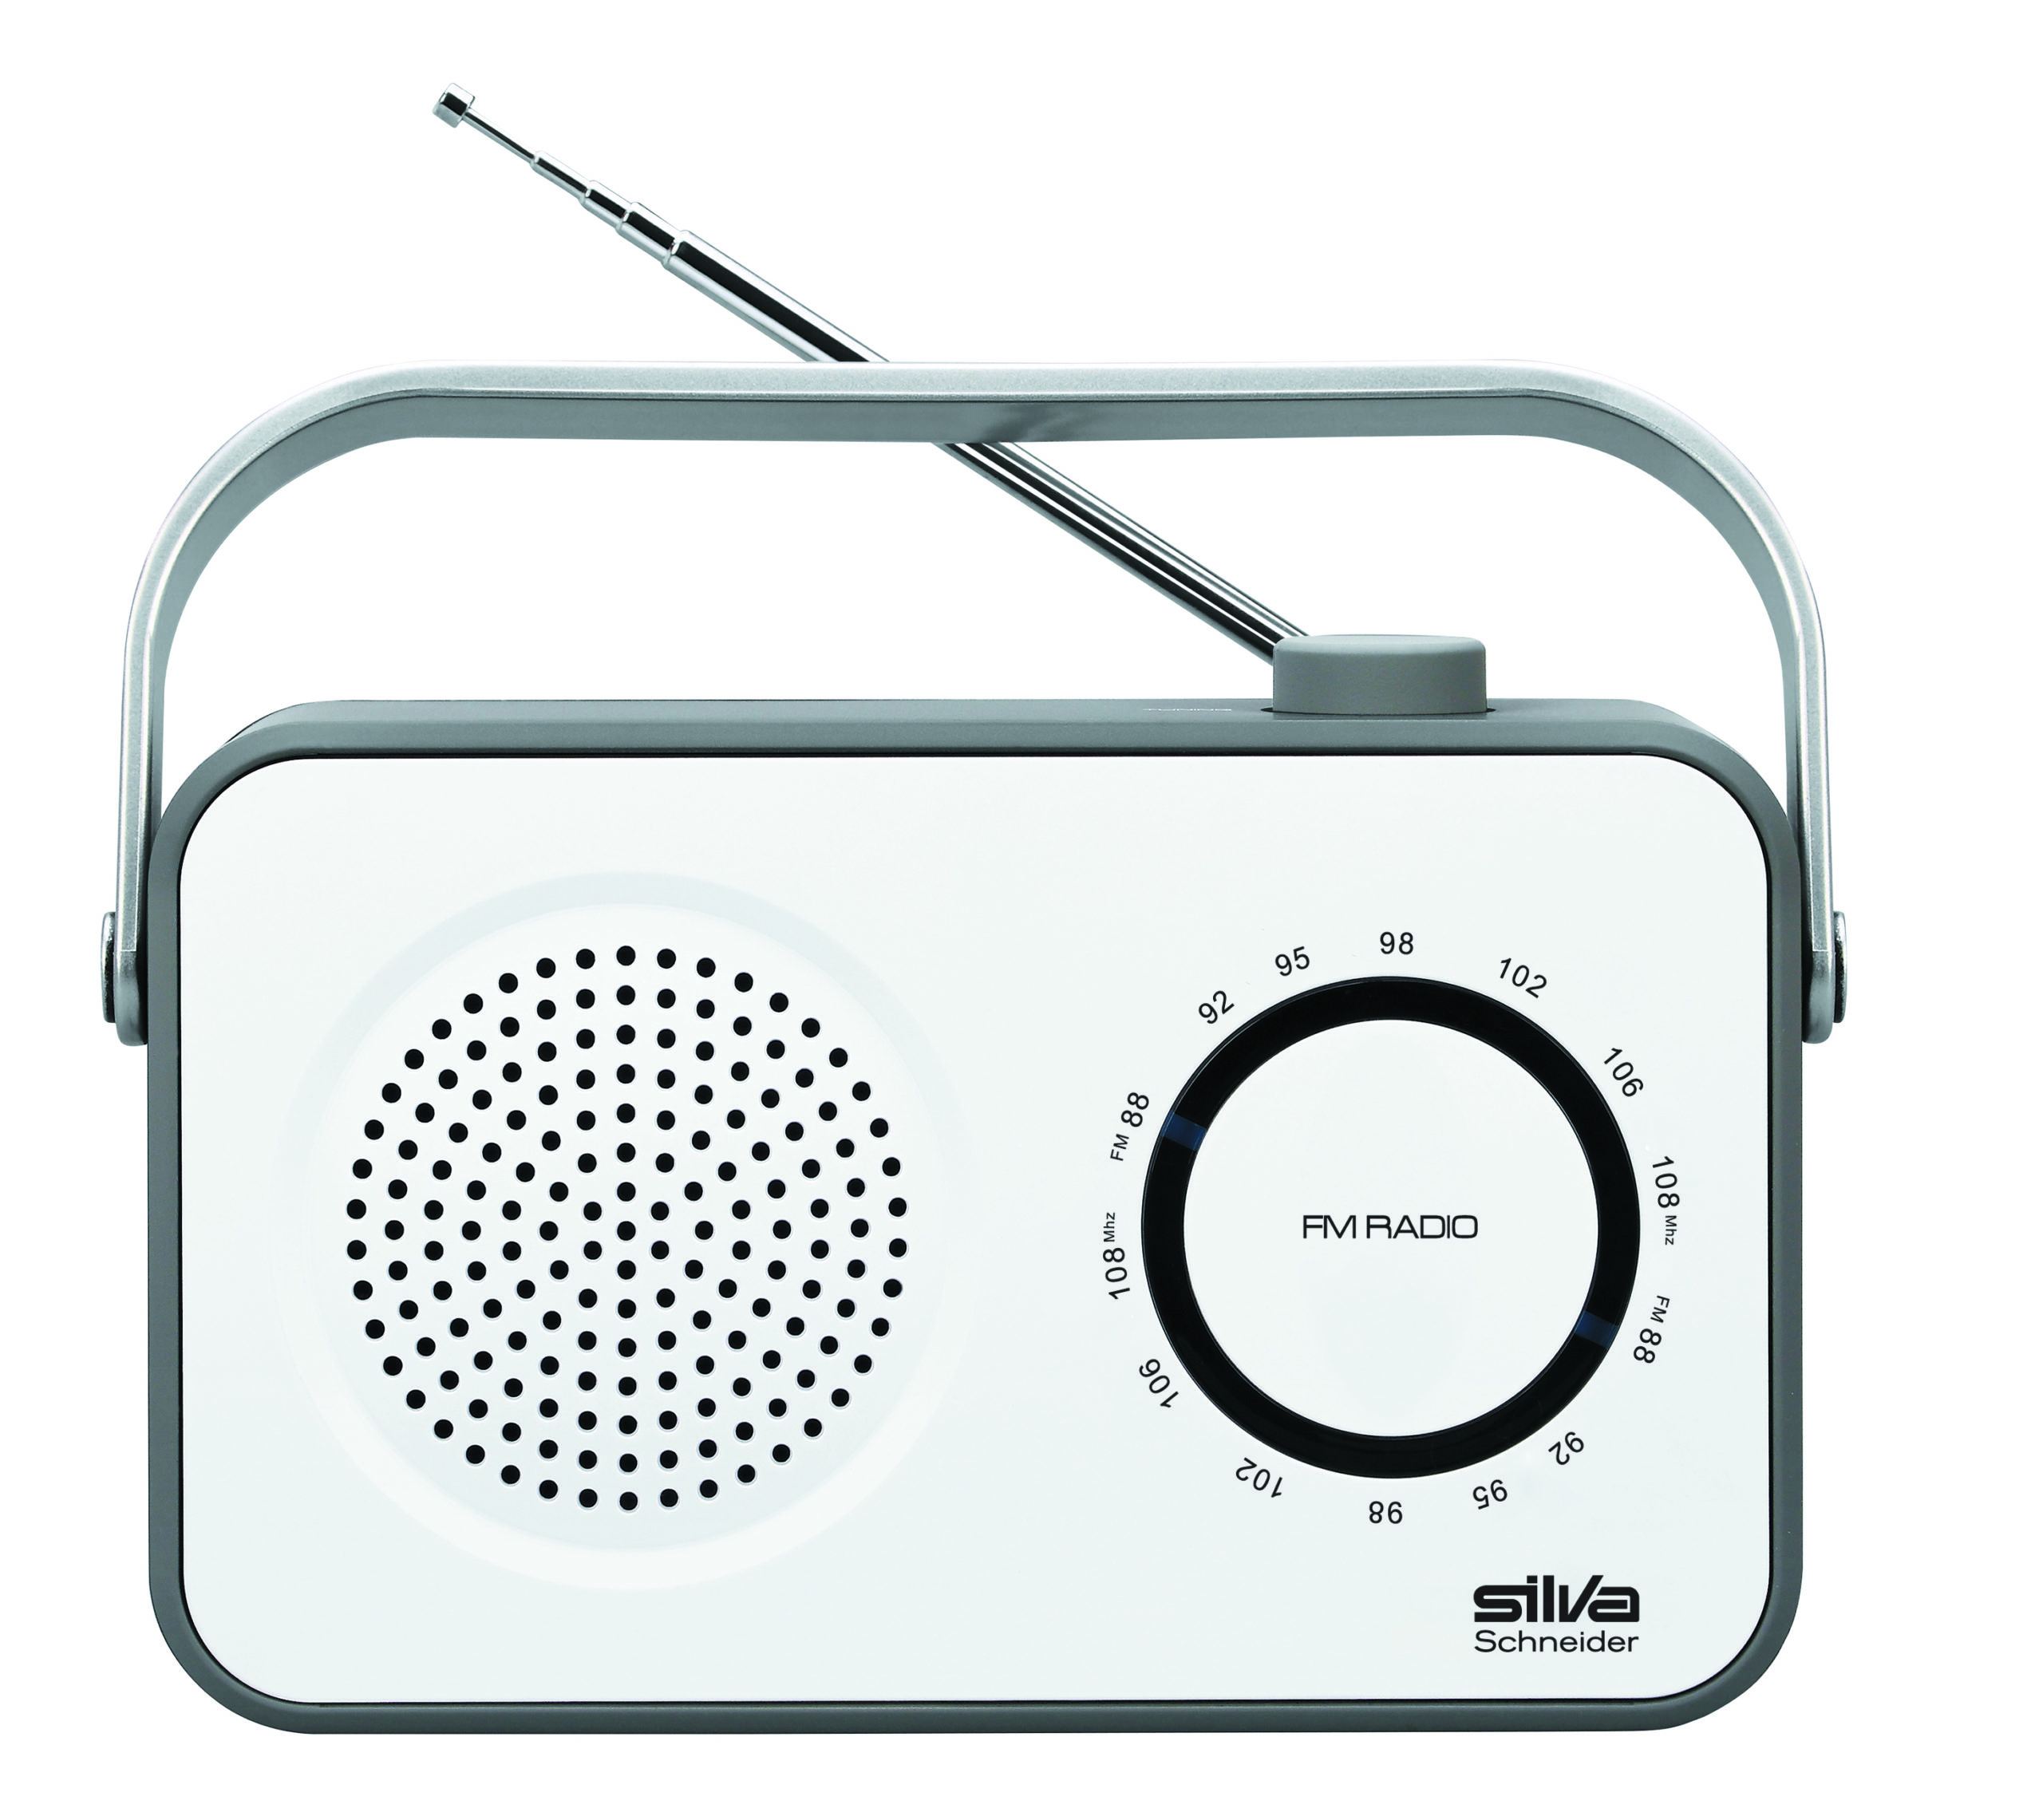 SILVA-SCHNEIDER M 295 Radio, FM, weiß/grau